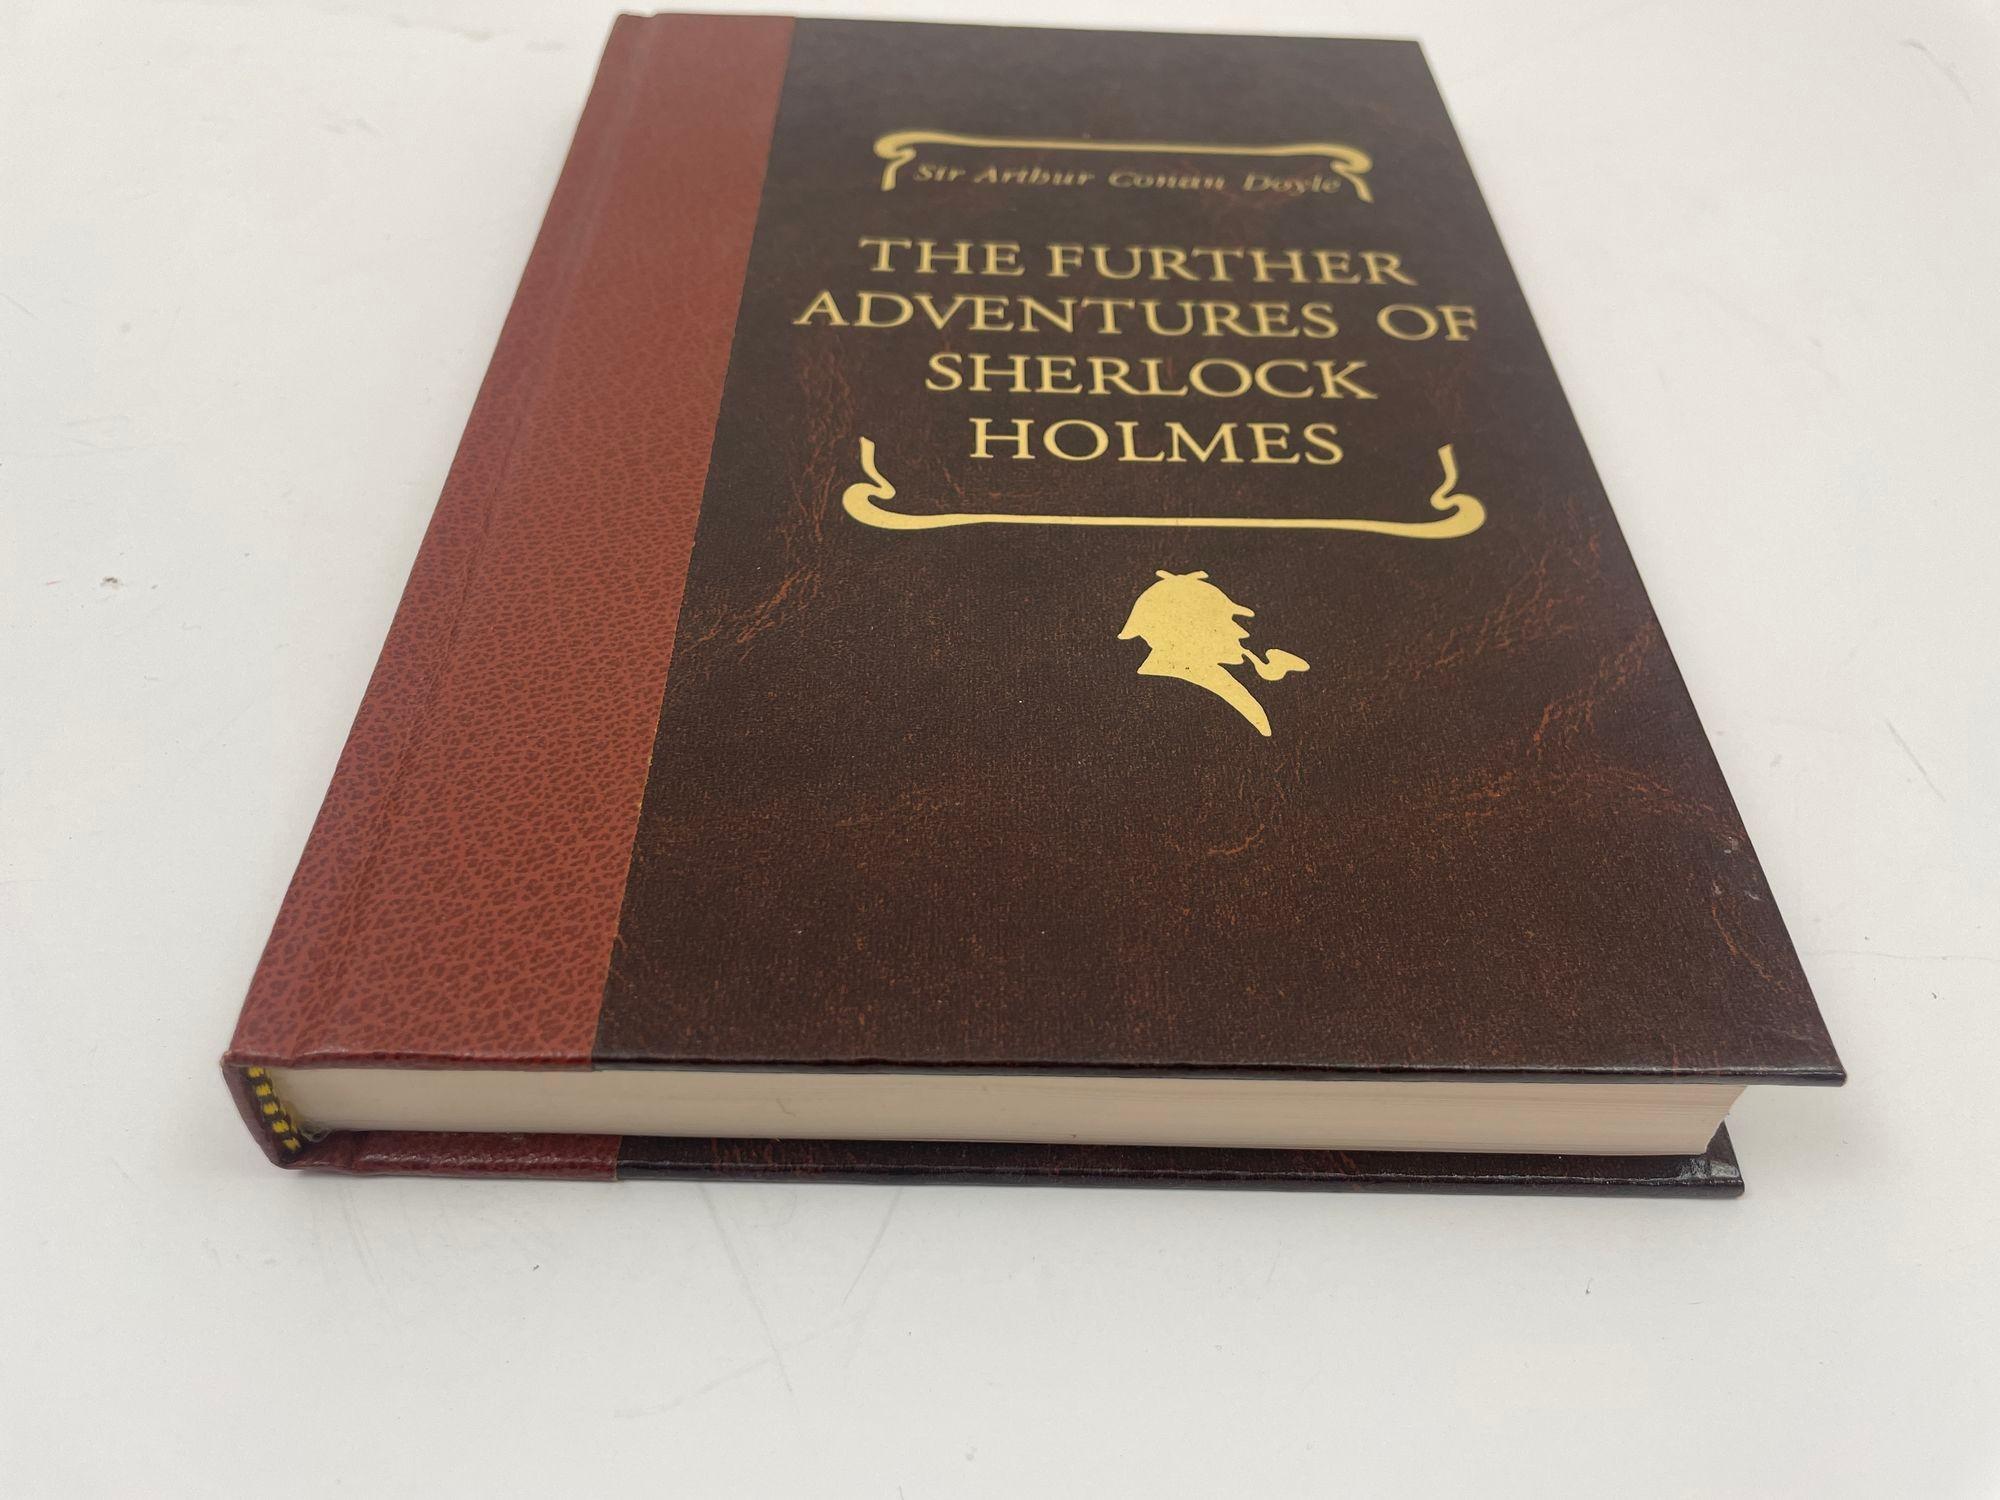 Les nouvelles aventures de Sherlock Holmes par Arthur Conan Doyle.
Livre de collection à couverture rigide.
New York : Reader's Digest Association, 1993.
Première édition, premier tirage.
Couverture rigide, anglais 219 pages.